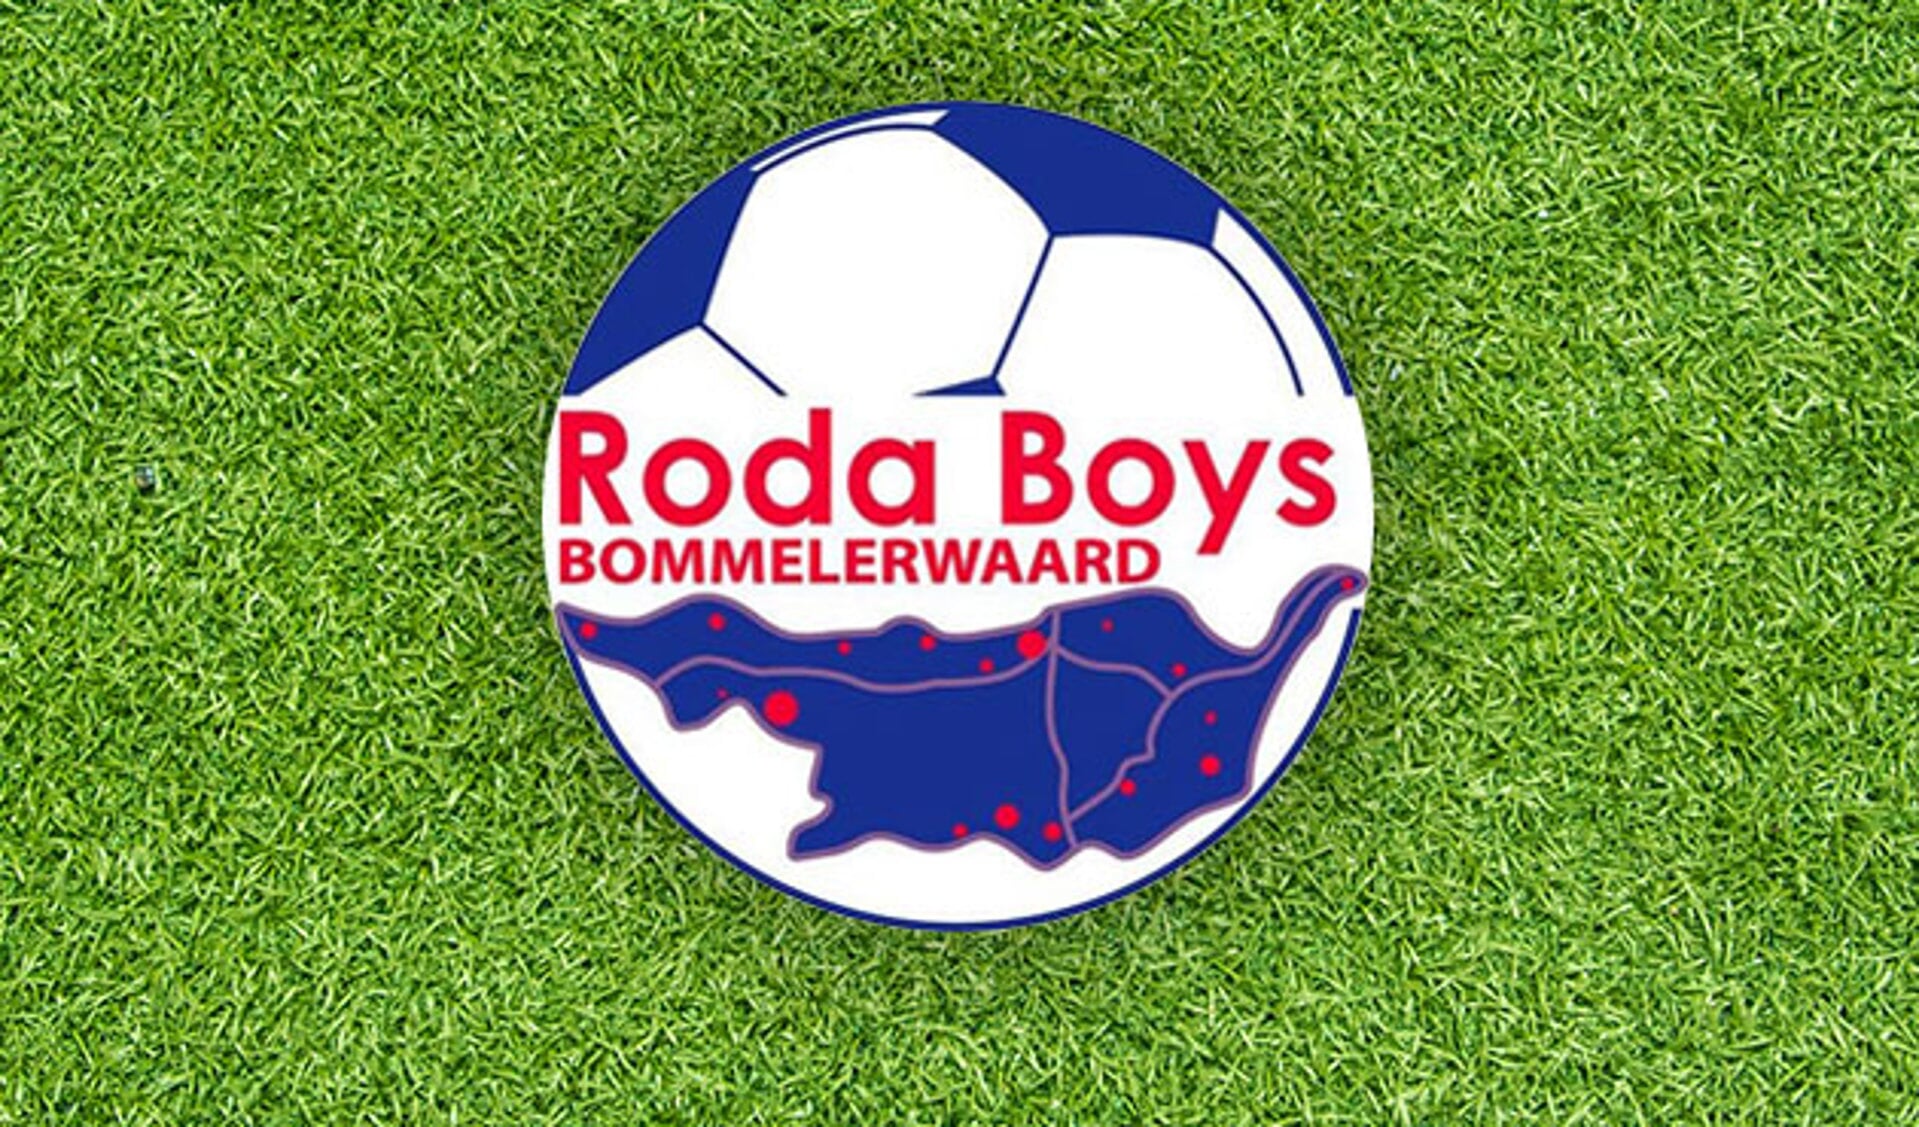 Jeugdbestuurslid stelt zich kandidaat als voorzitter Roda Boys